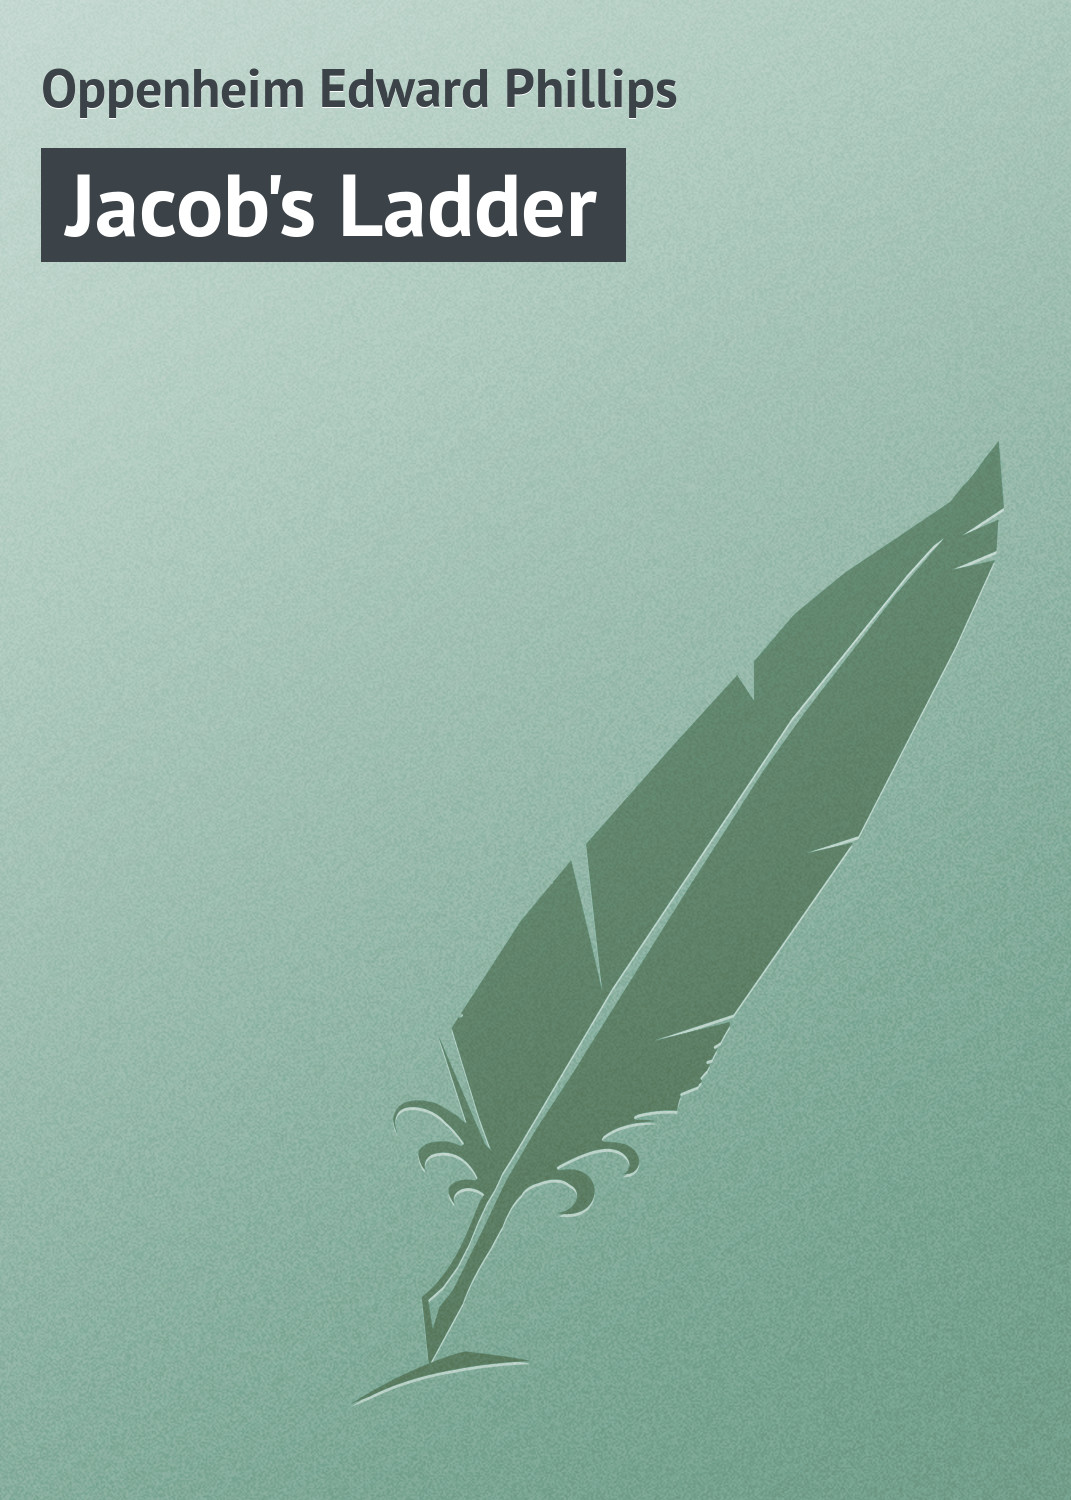 Книга Jacob's Ladder из серии , созданная Edward Oppenheim, может относится к жанру Иностранные языки, Зарубежная классика. Стоимость электронной книги Jacob's Ladder с идентификатором 23157859 составляет 5.99 руб.